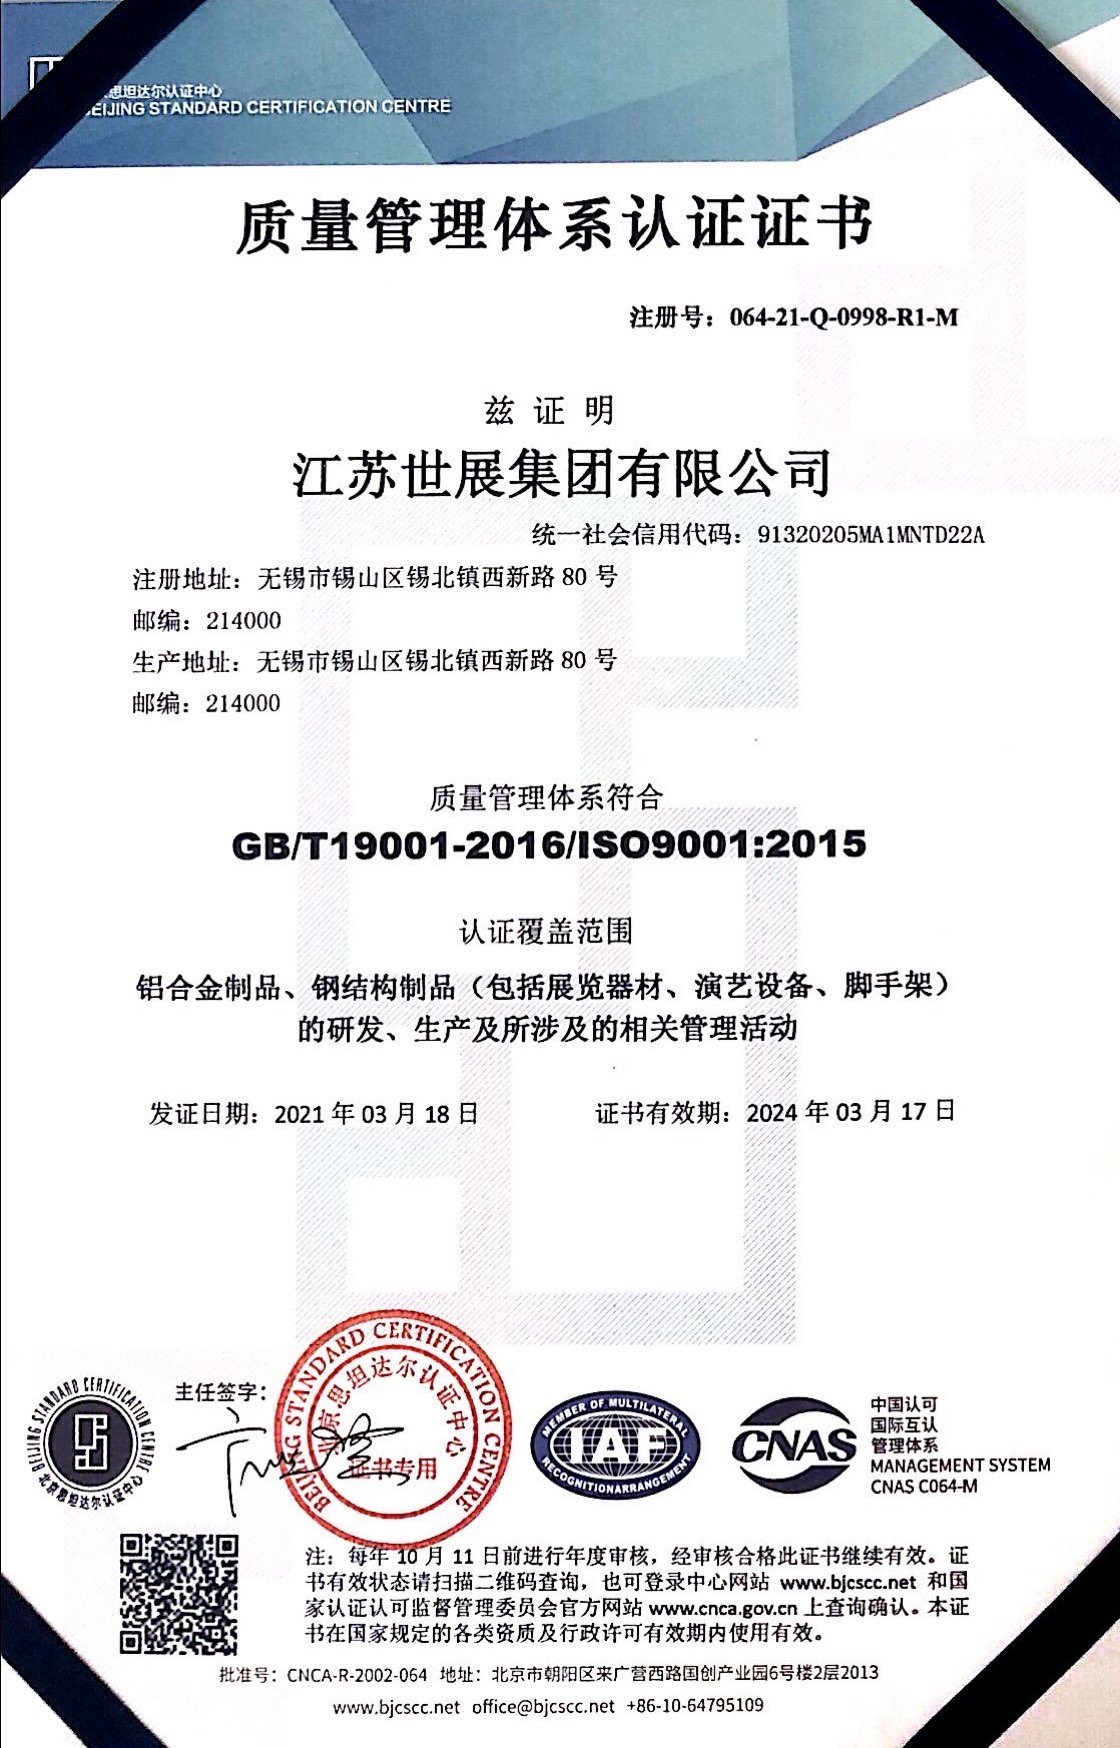 Jiangsu Shizhan Group Co.,Ltd. Certifications